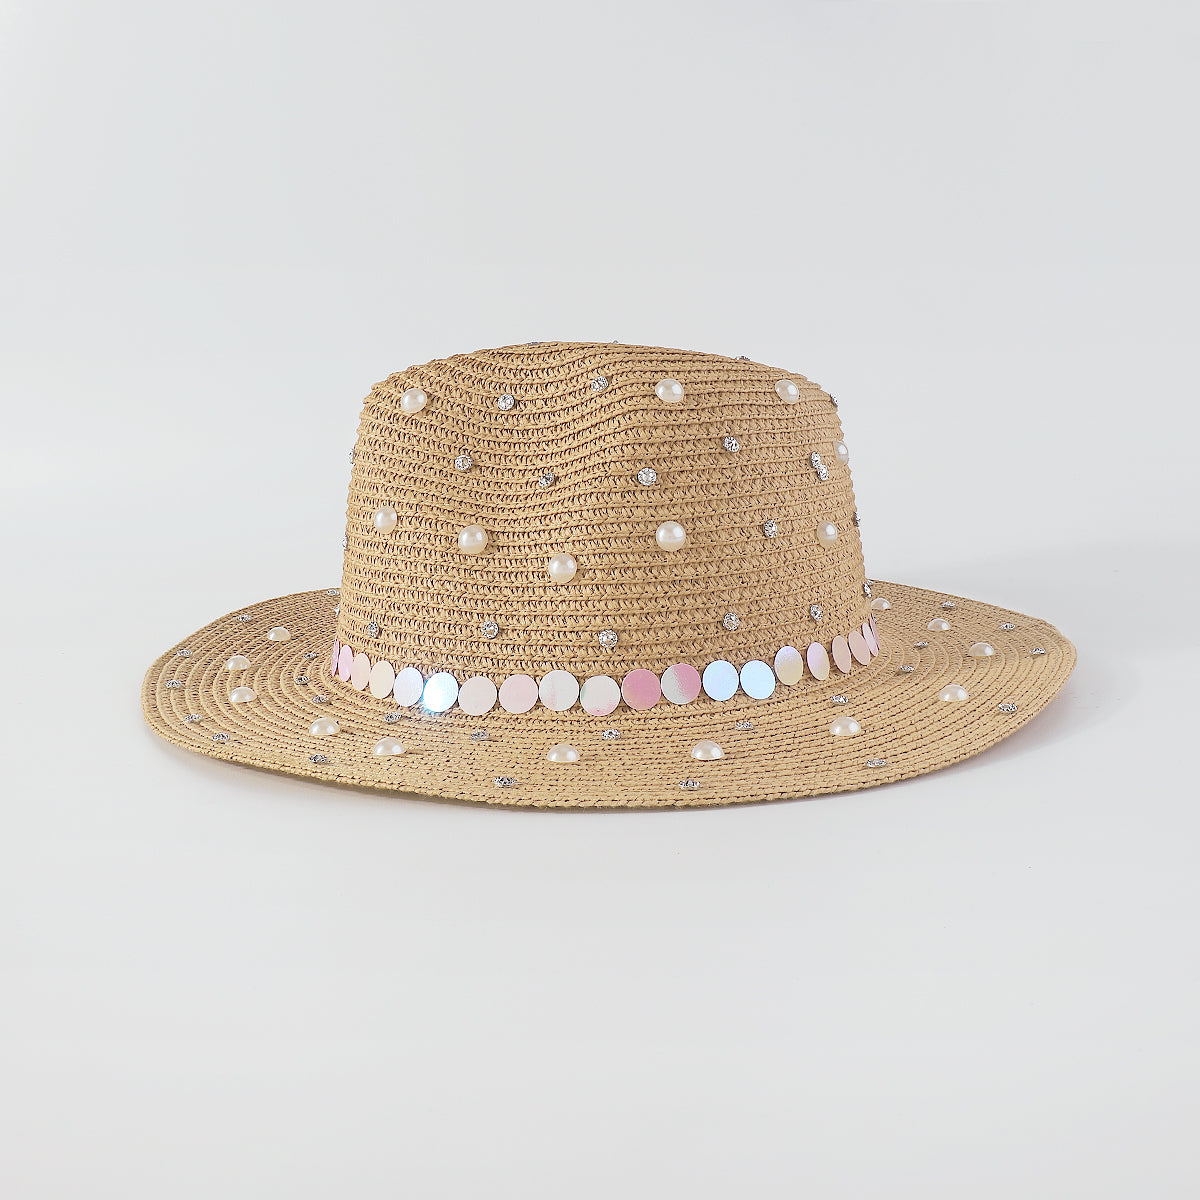 Q0234 Full Rhinestone Pearls Raffia Fedora Sun Hat